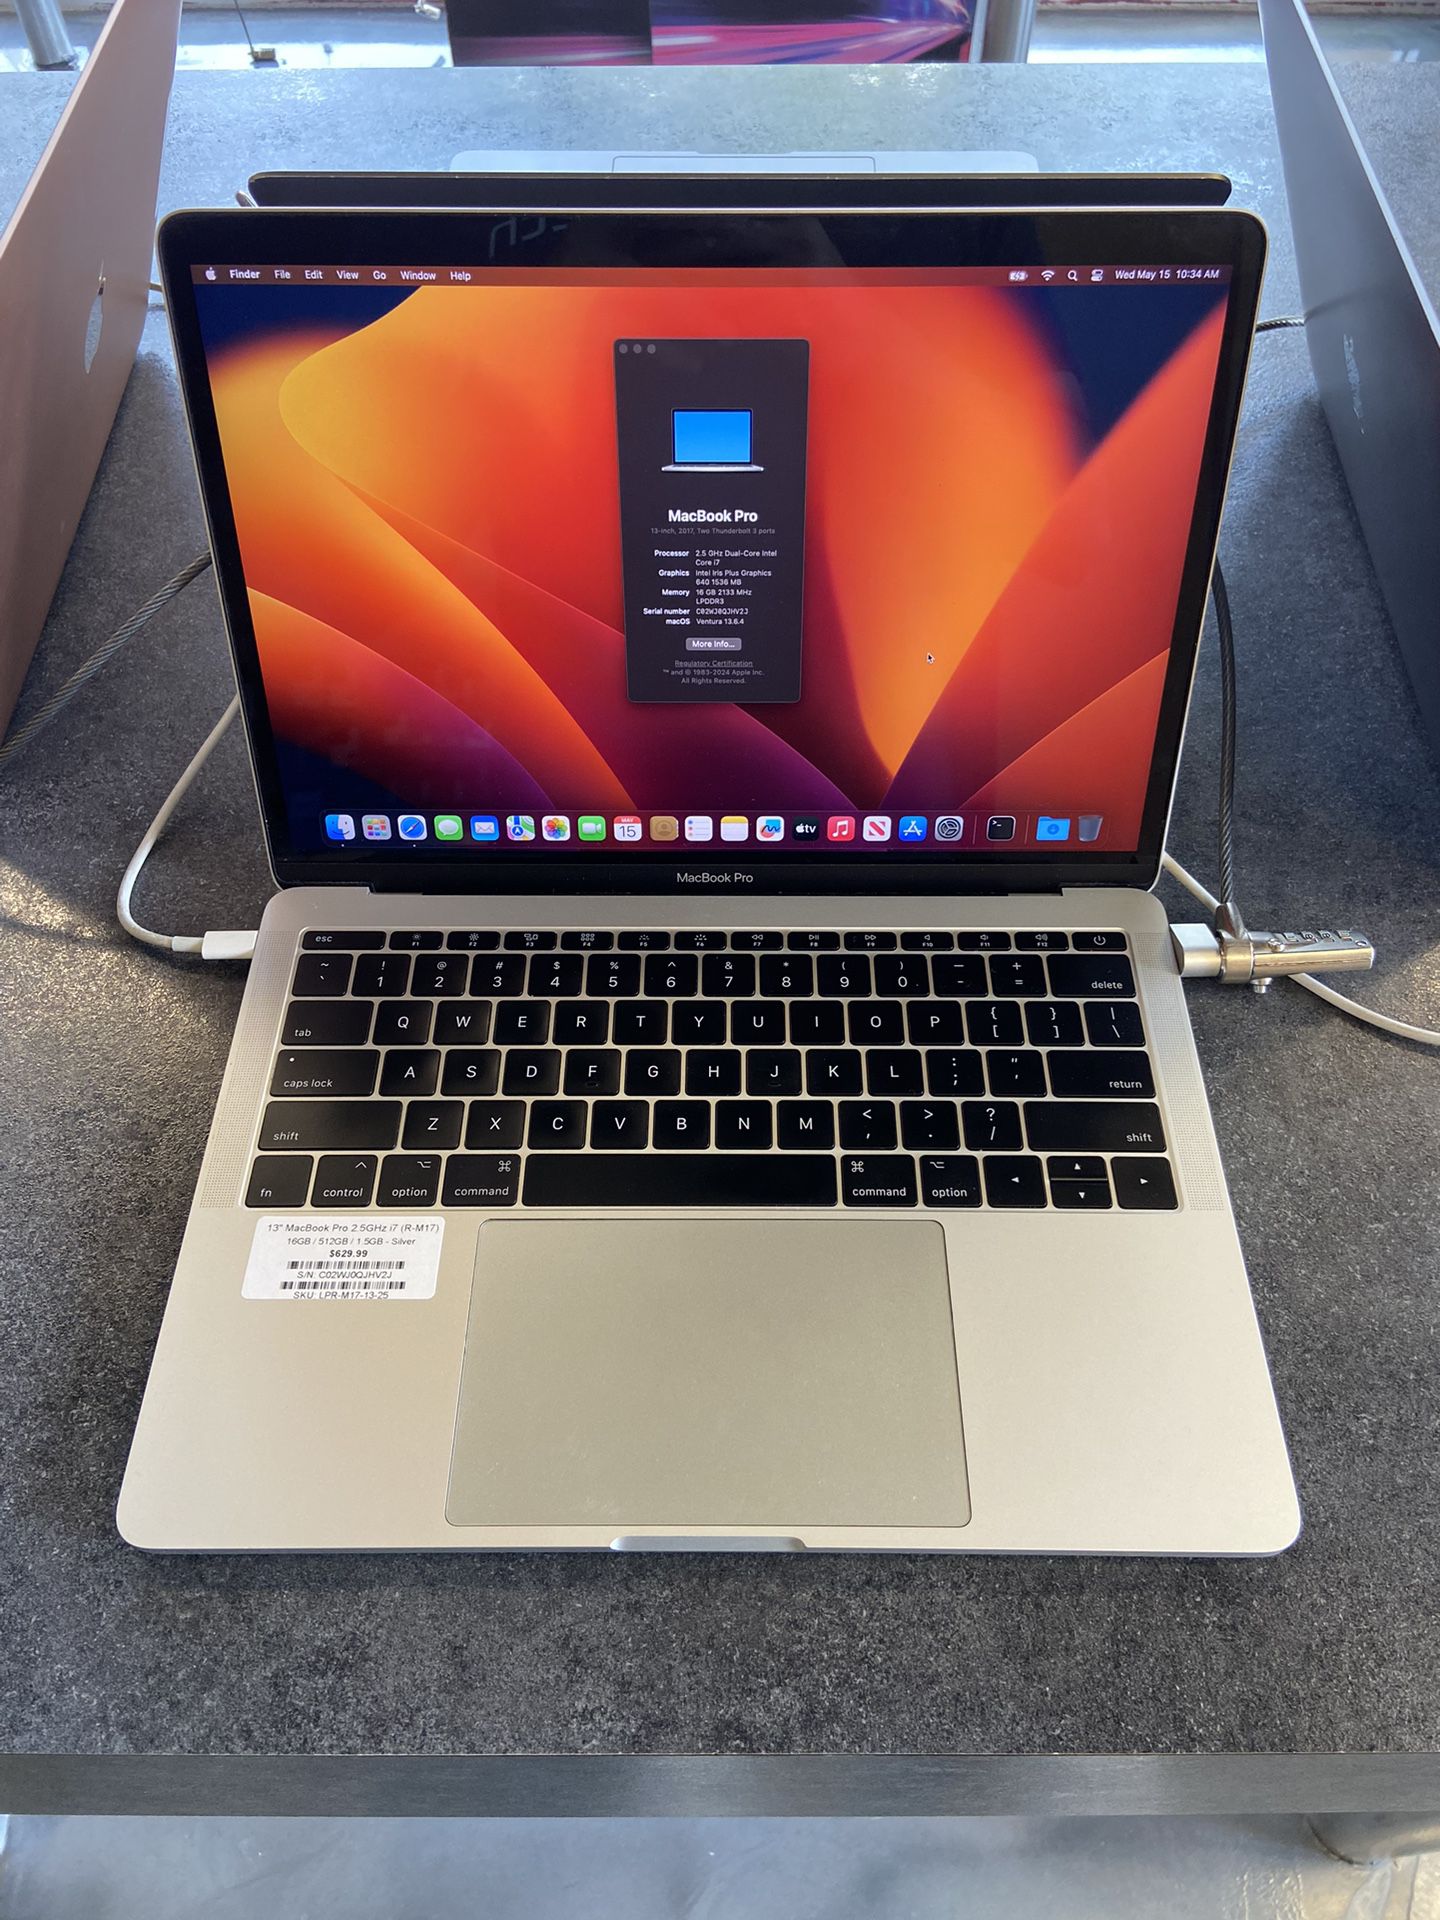 Apple MacBook Pro 13" - Intel i7, 16GB RAM, 512GB SSD, Silver